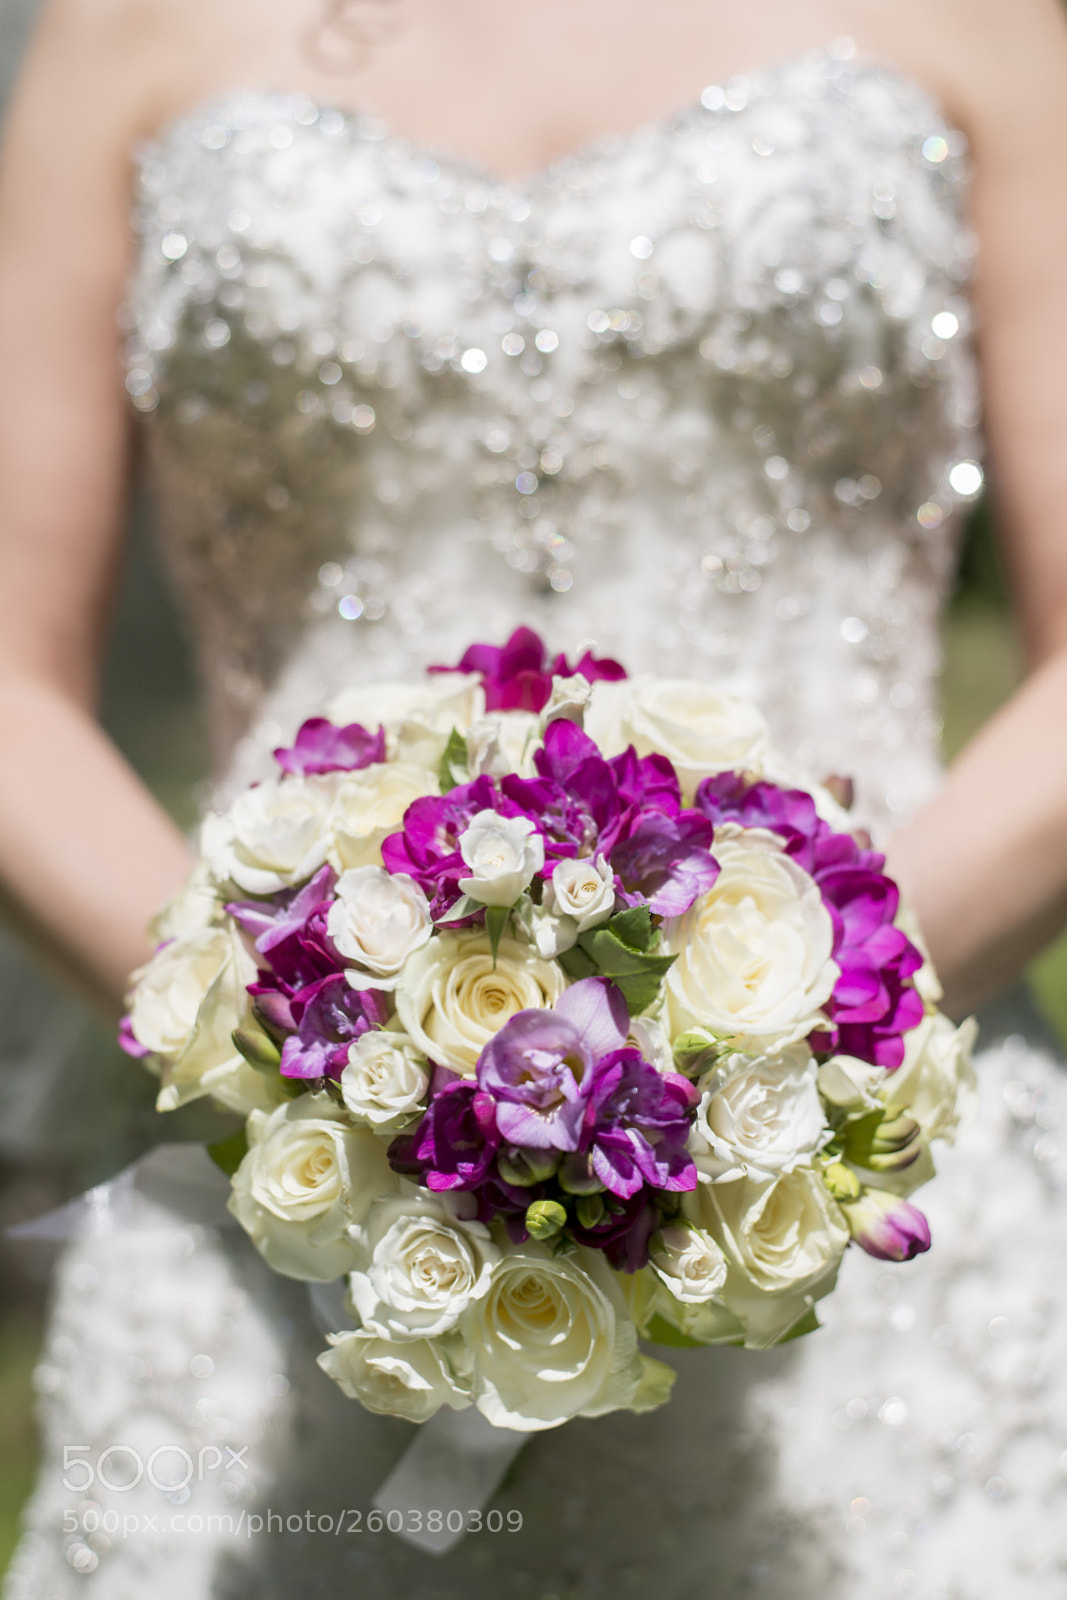 Nikon D800E sample photo. Wedding bouquet photography